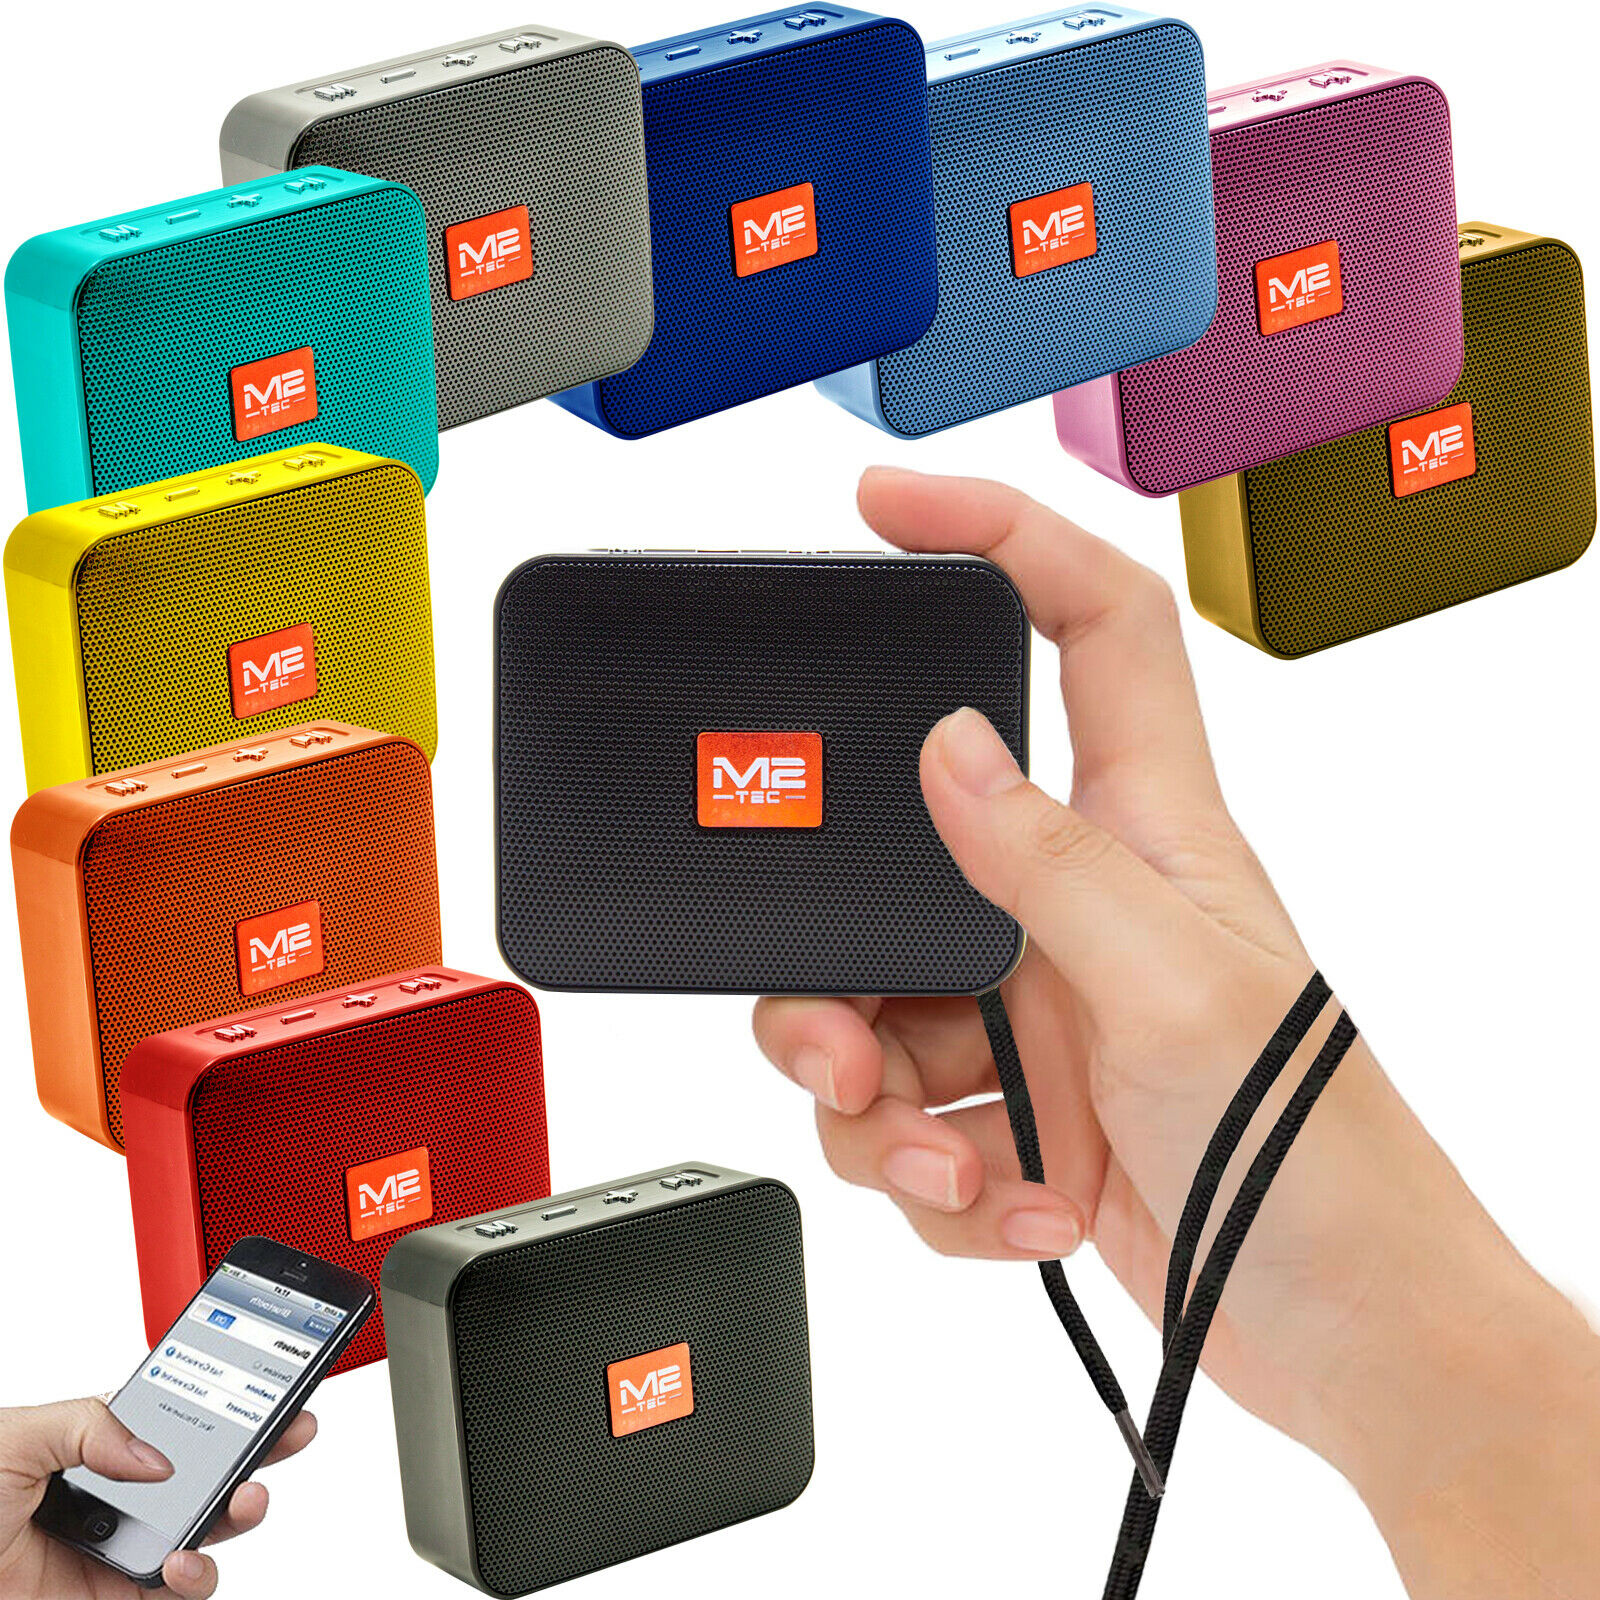 Tragbarer Mini Bluetooth Lautsprecher Soundbox Mp3 Radio Für 1290€ Inkl Versand Yourdealzde